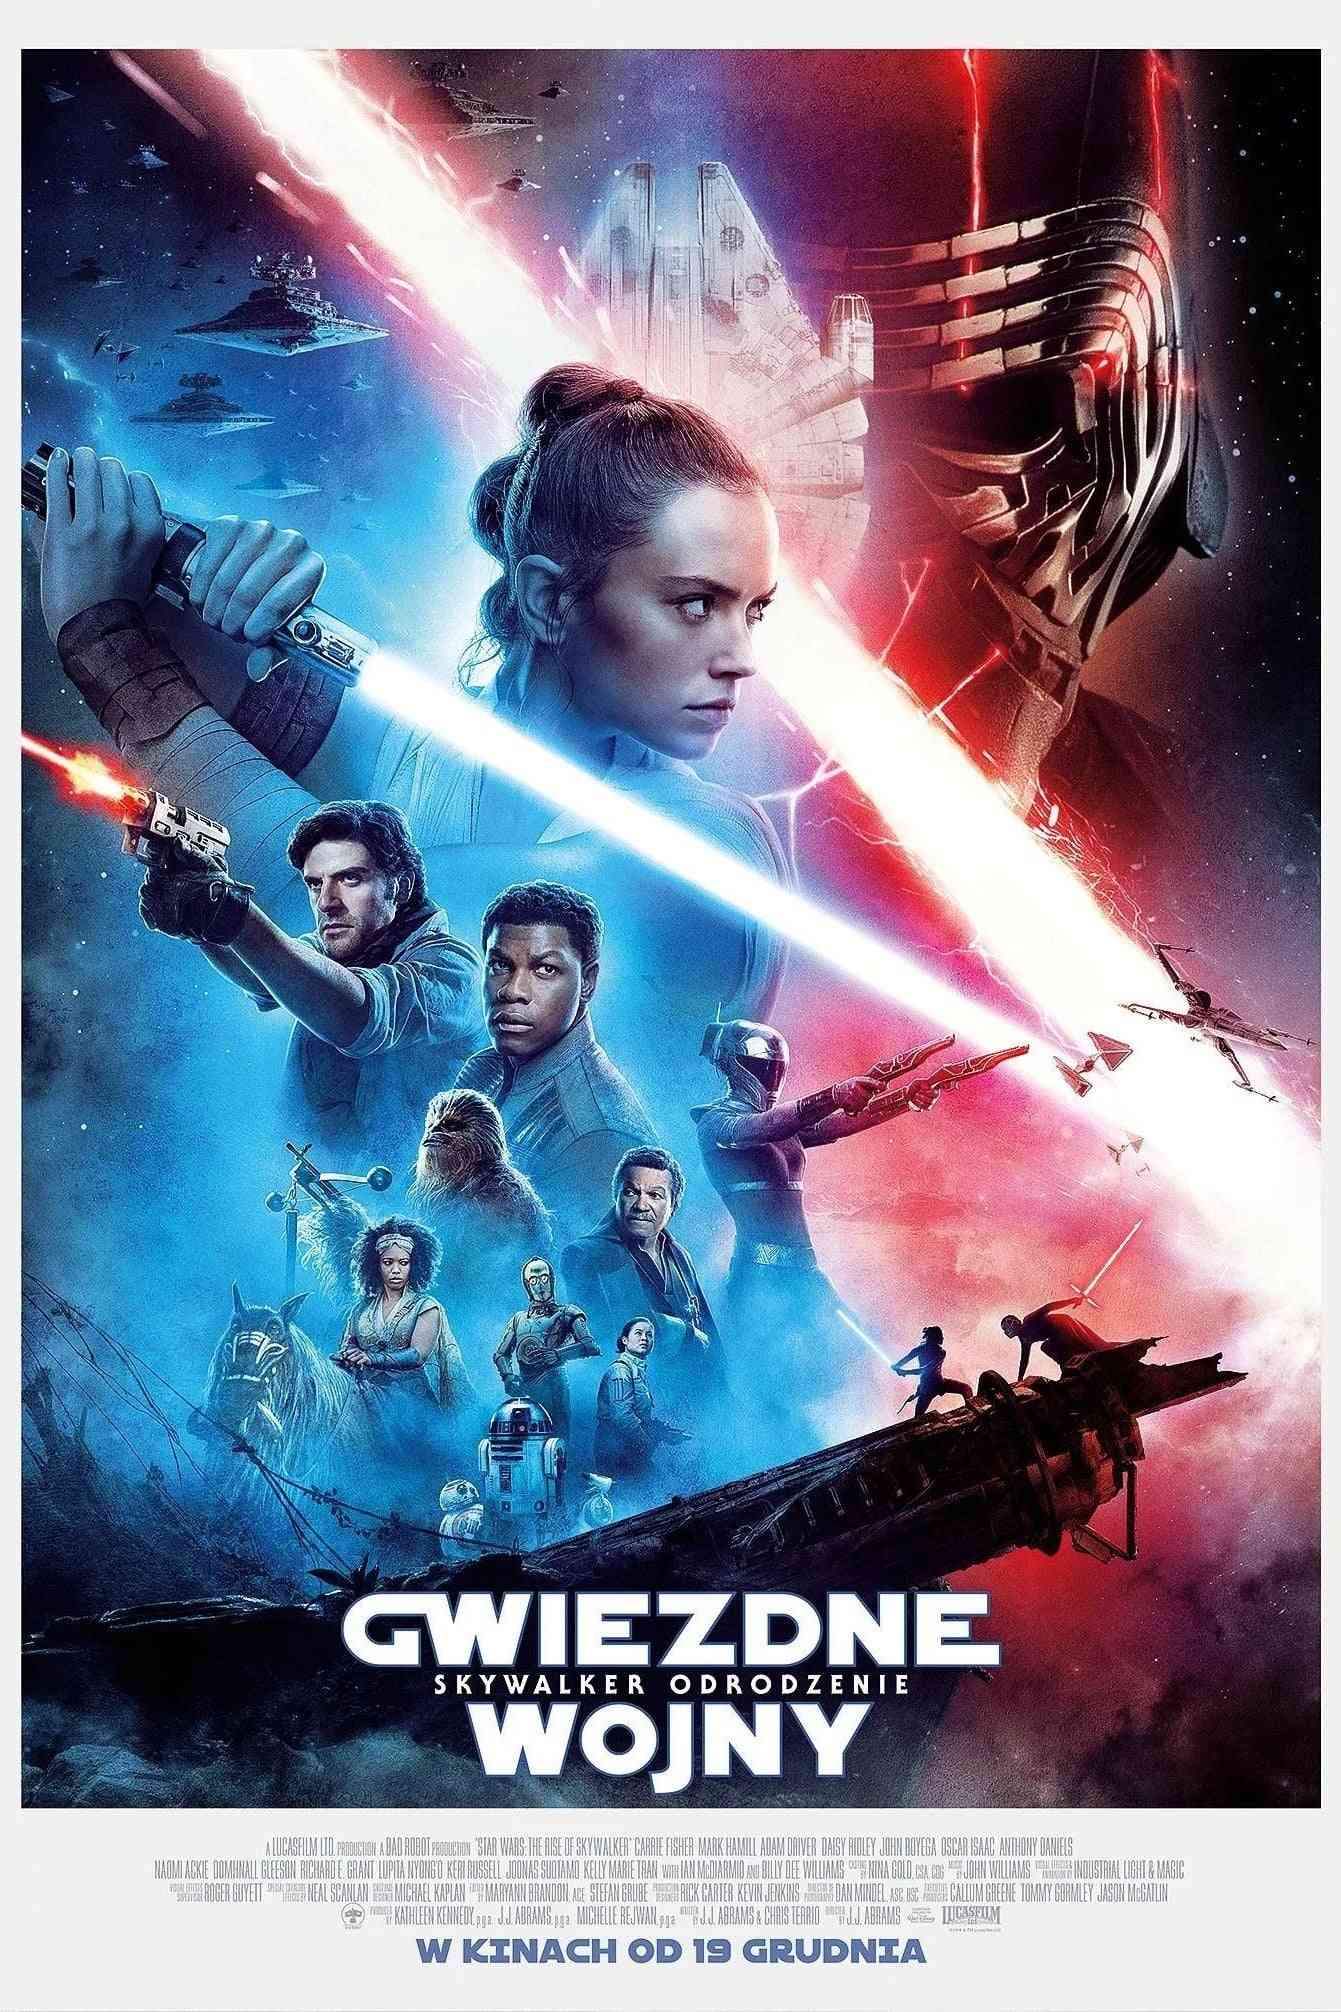 Gwiezdne wojny: część IX - Skywalker. Odrodzenie  (2019)